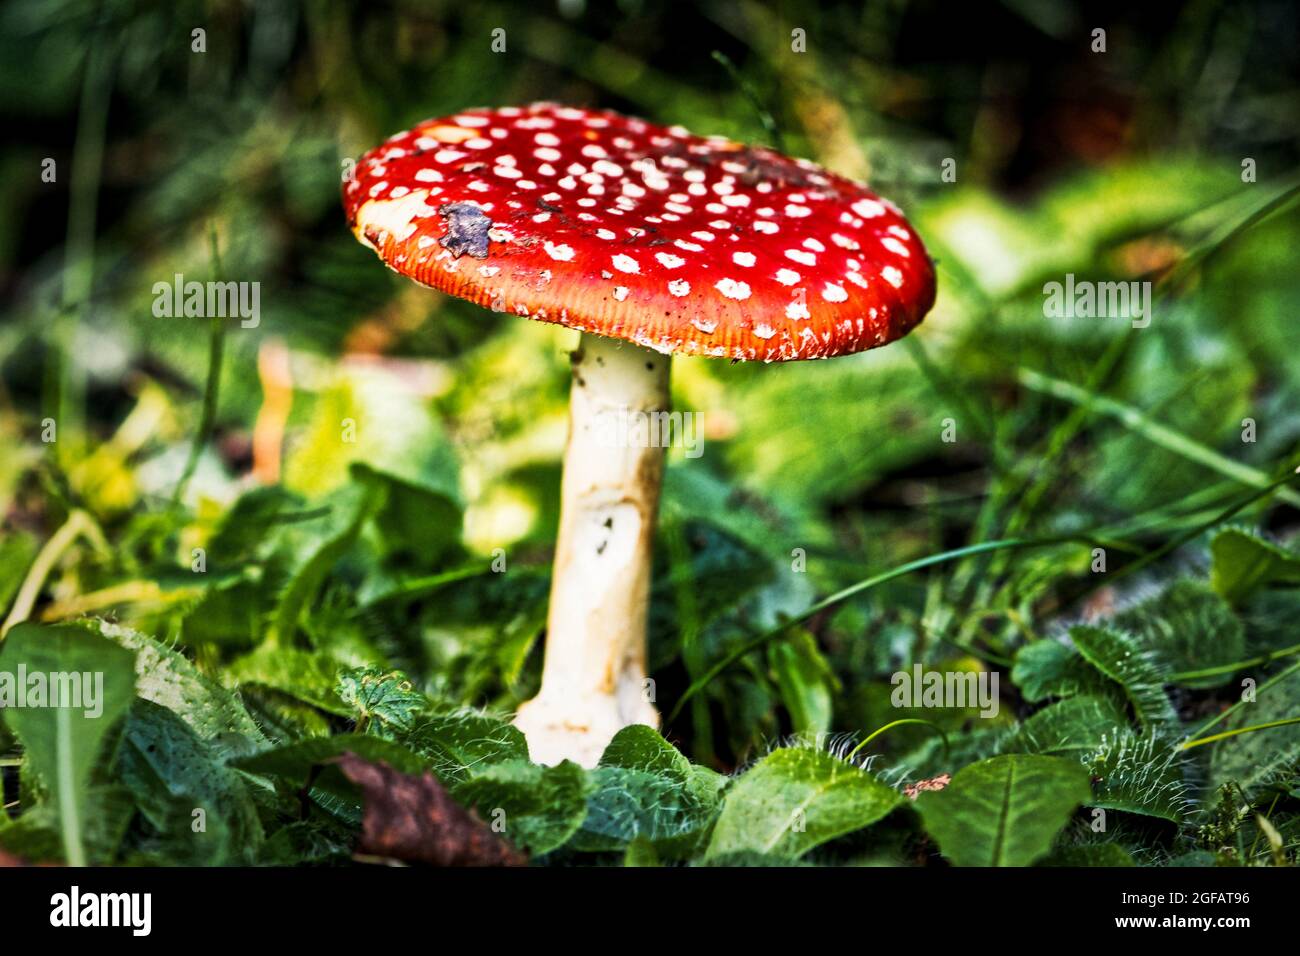 Fausse oronga aux champignons, balançoire à la mouche, Amanita muscaria dans une forêt herbeuse luxuriante en automne Banque D'Images